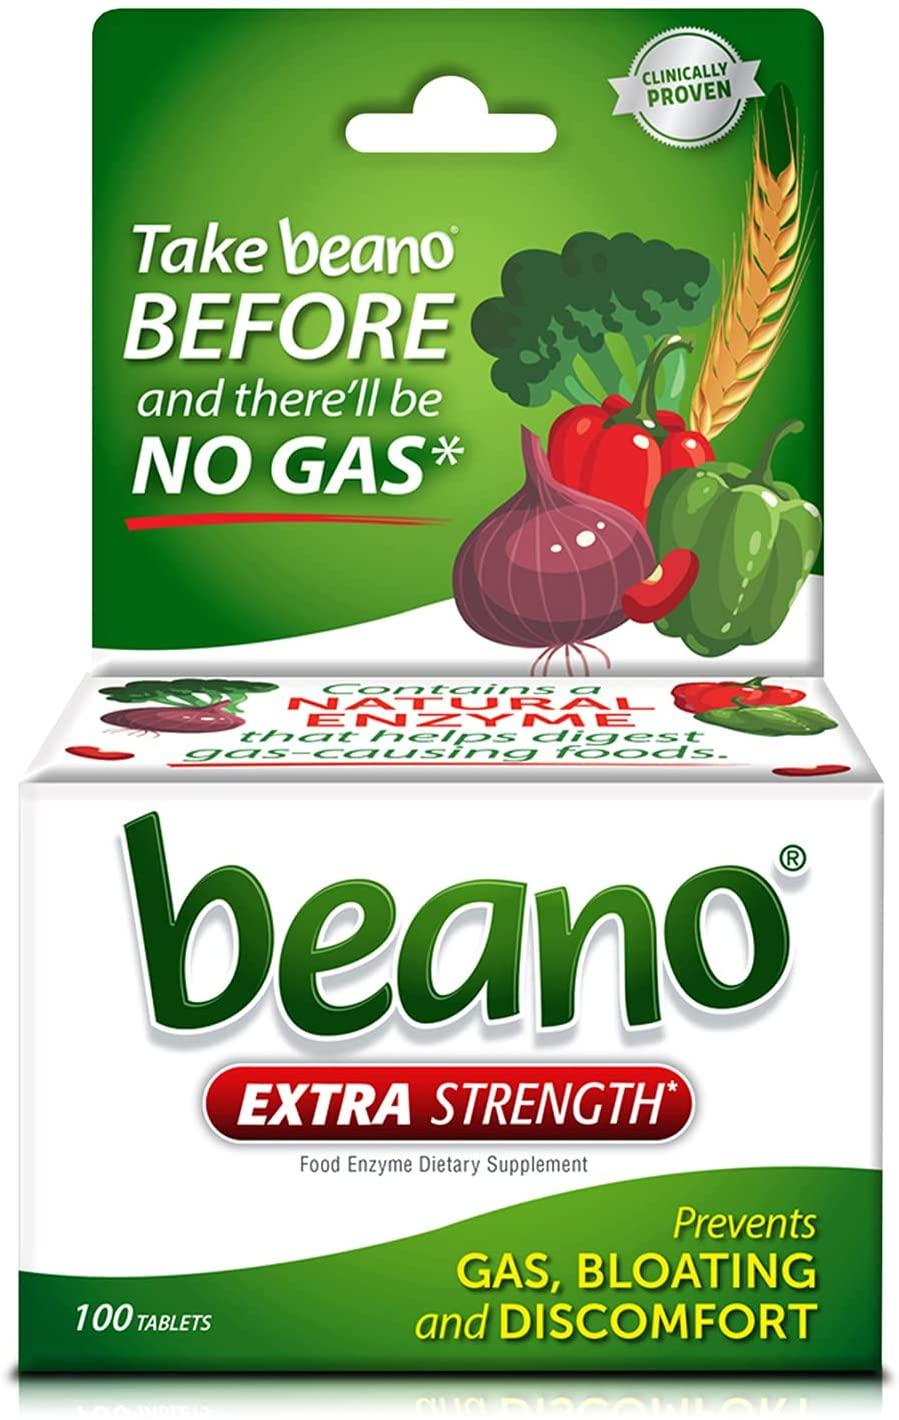 Beano | Prévention des Gaz et Supplément d'Enzymes Digestives - mondialpharma.com